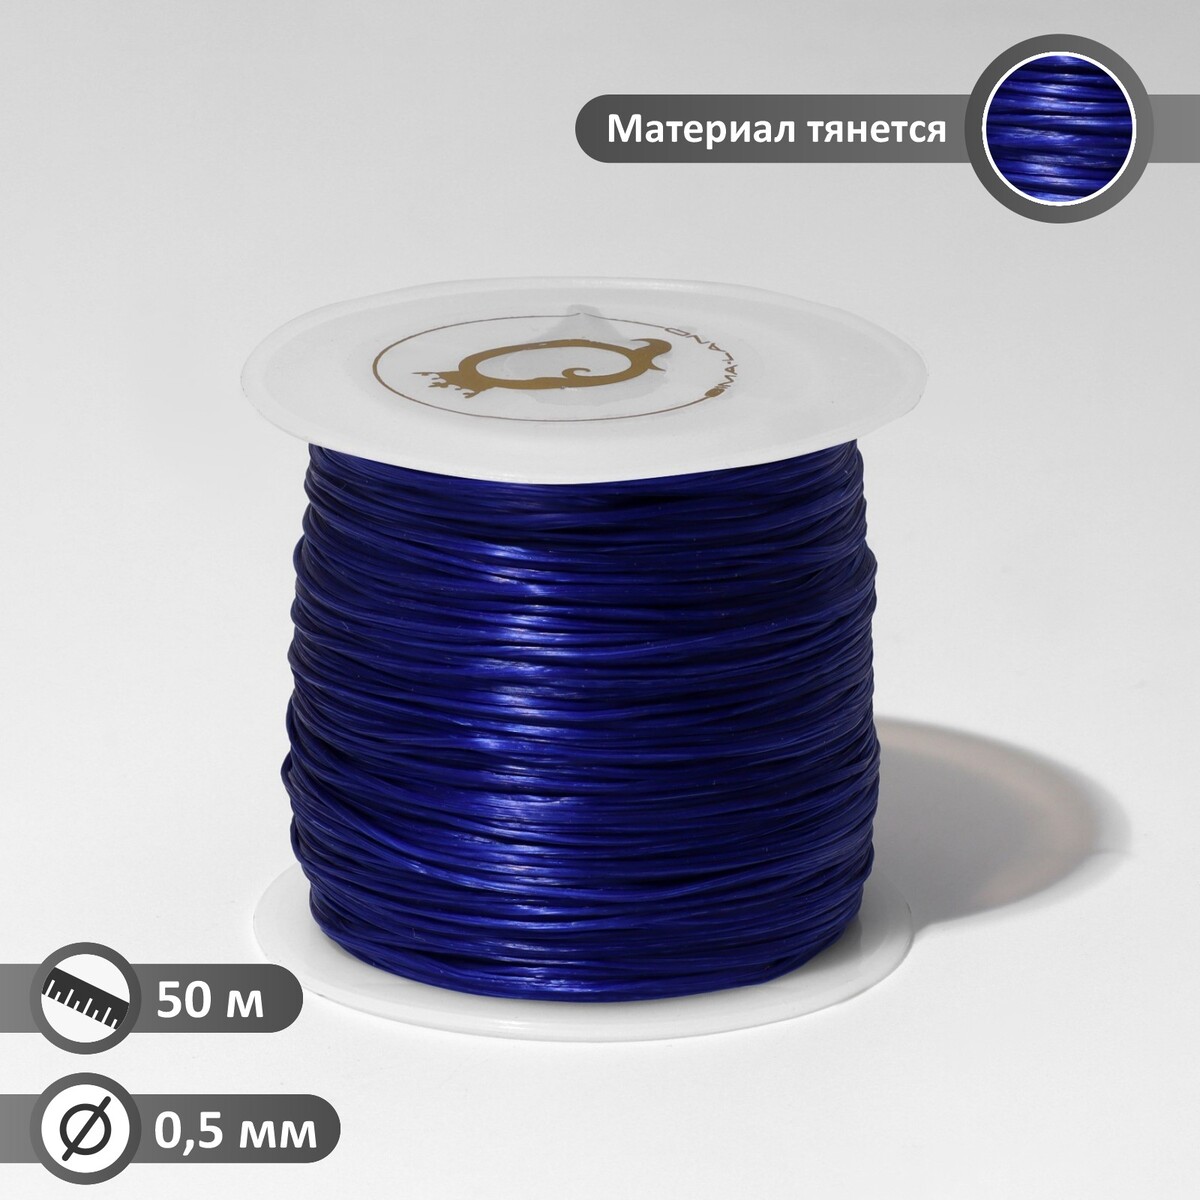 Нить силиконовая (резинка) d=0,5 мм, l=50 м (прочность 2250 денье), цвет синий